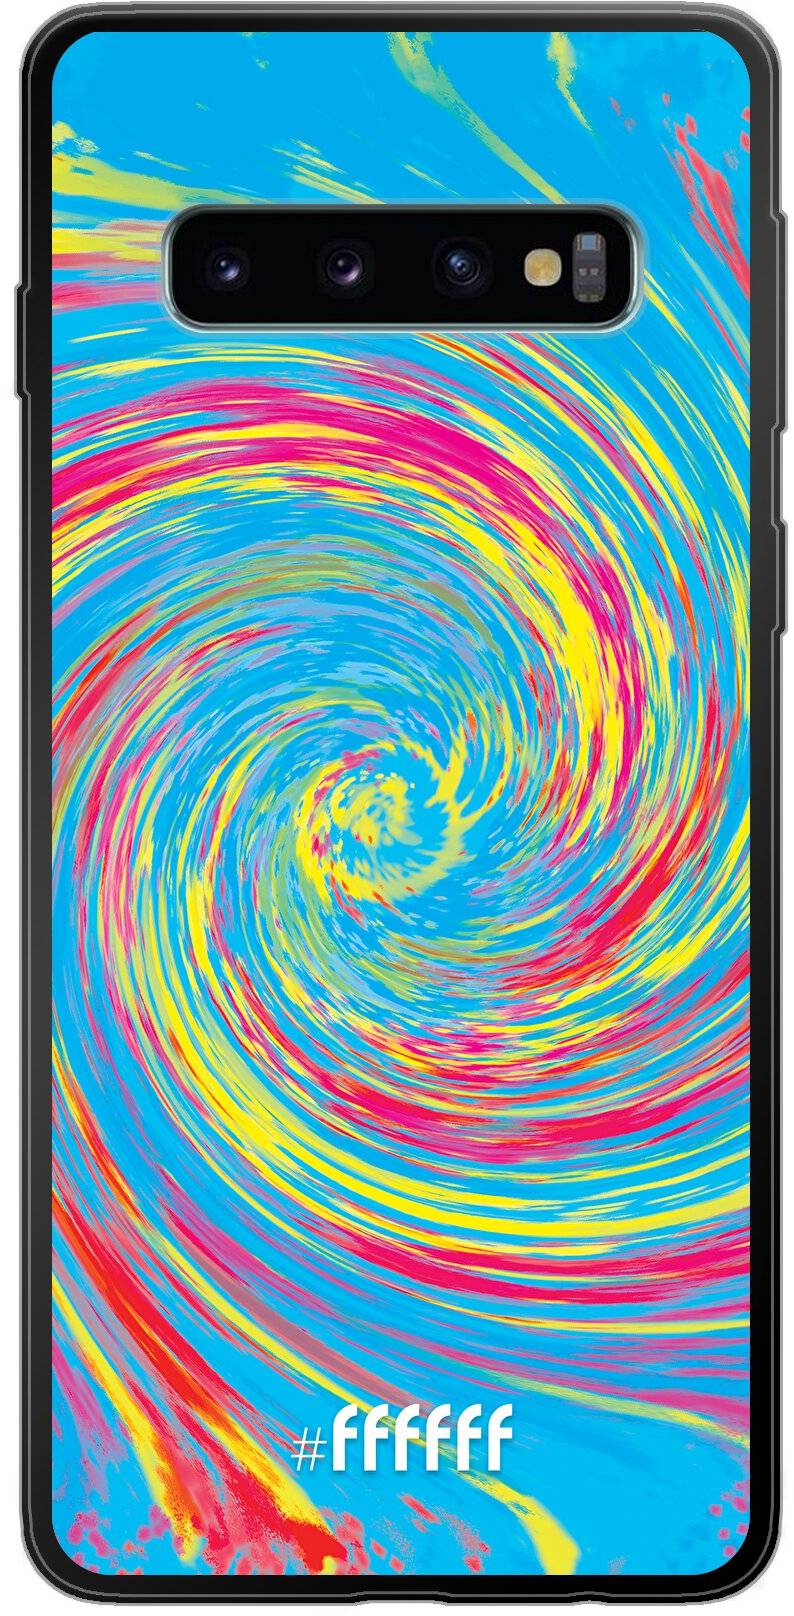 Swirl Tie Dye Galaxy S10